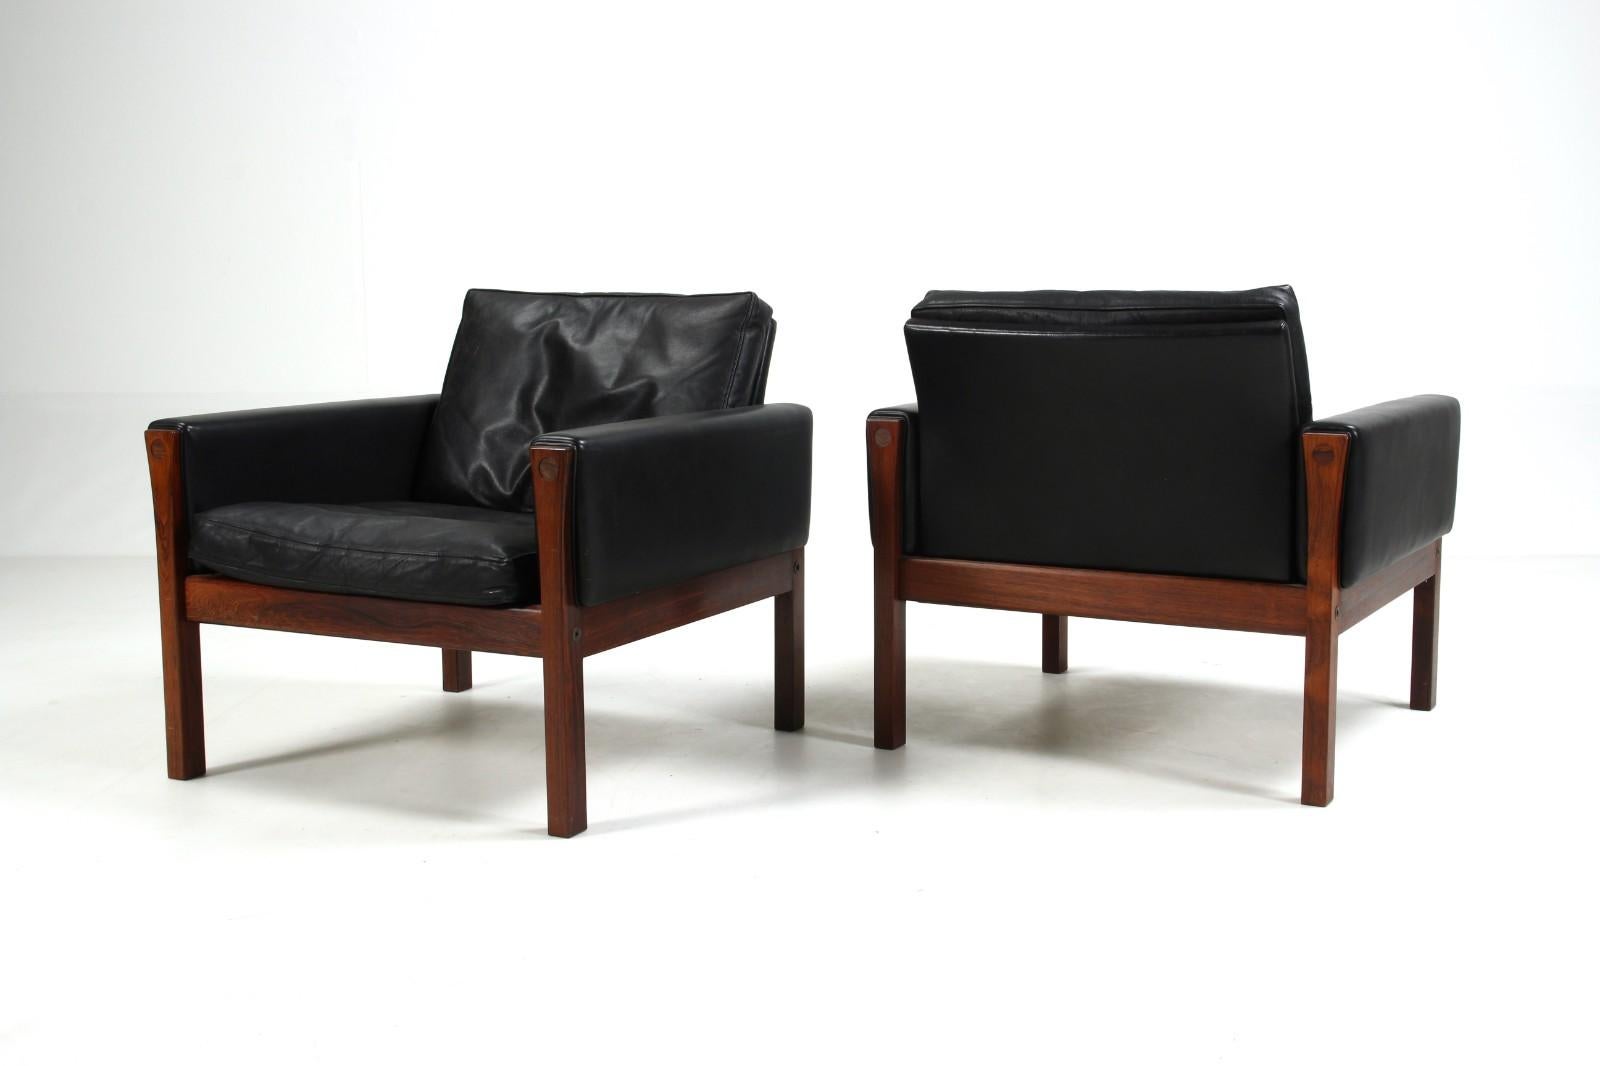 Ein eleganter und schlichter Entwurf von Hans Wegner, der vom dänischen Hersteller A.P. produziert wird. Gestohlen. Die klaren Linien dieser Sessel werden durch die schöne Palisanderstruktur hervorgehoben und machen dieses Modell zu einem Sessel mit